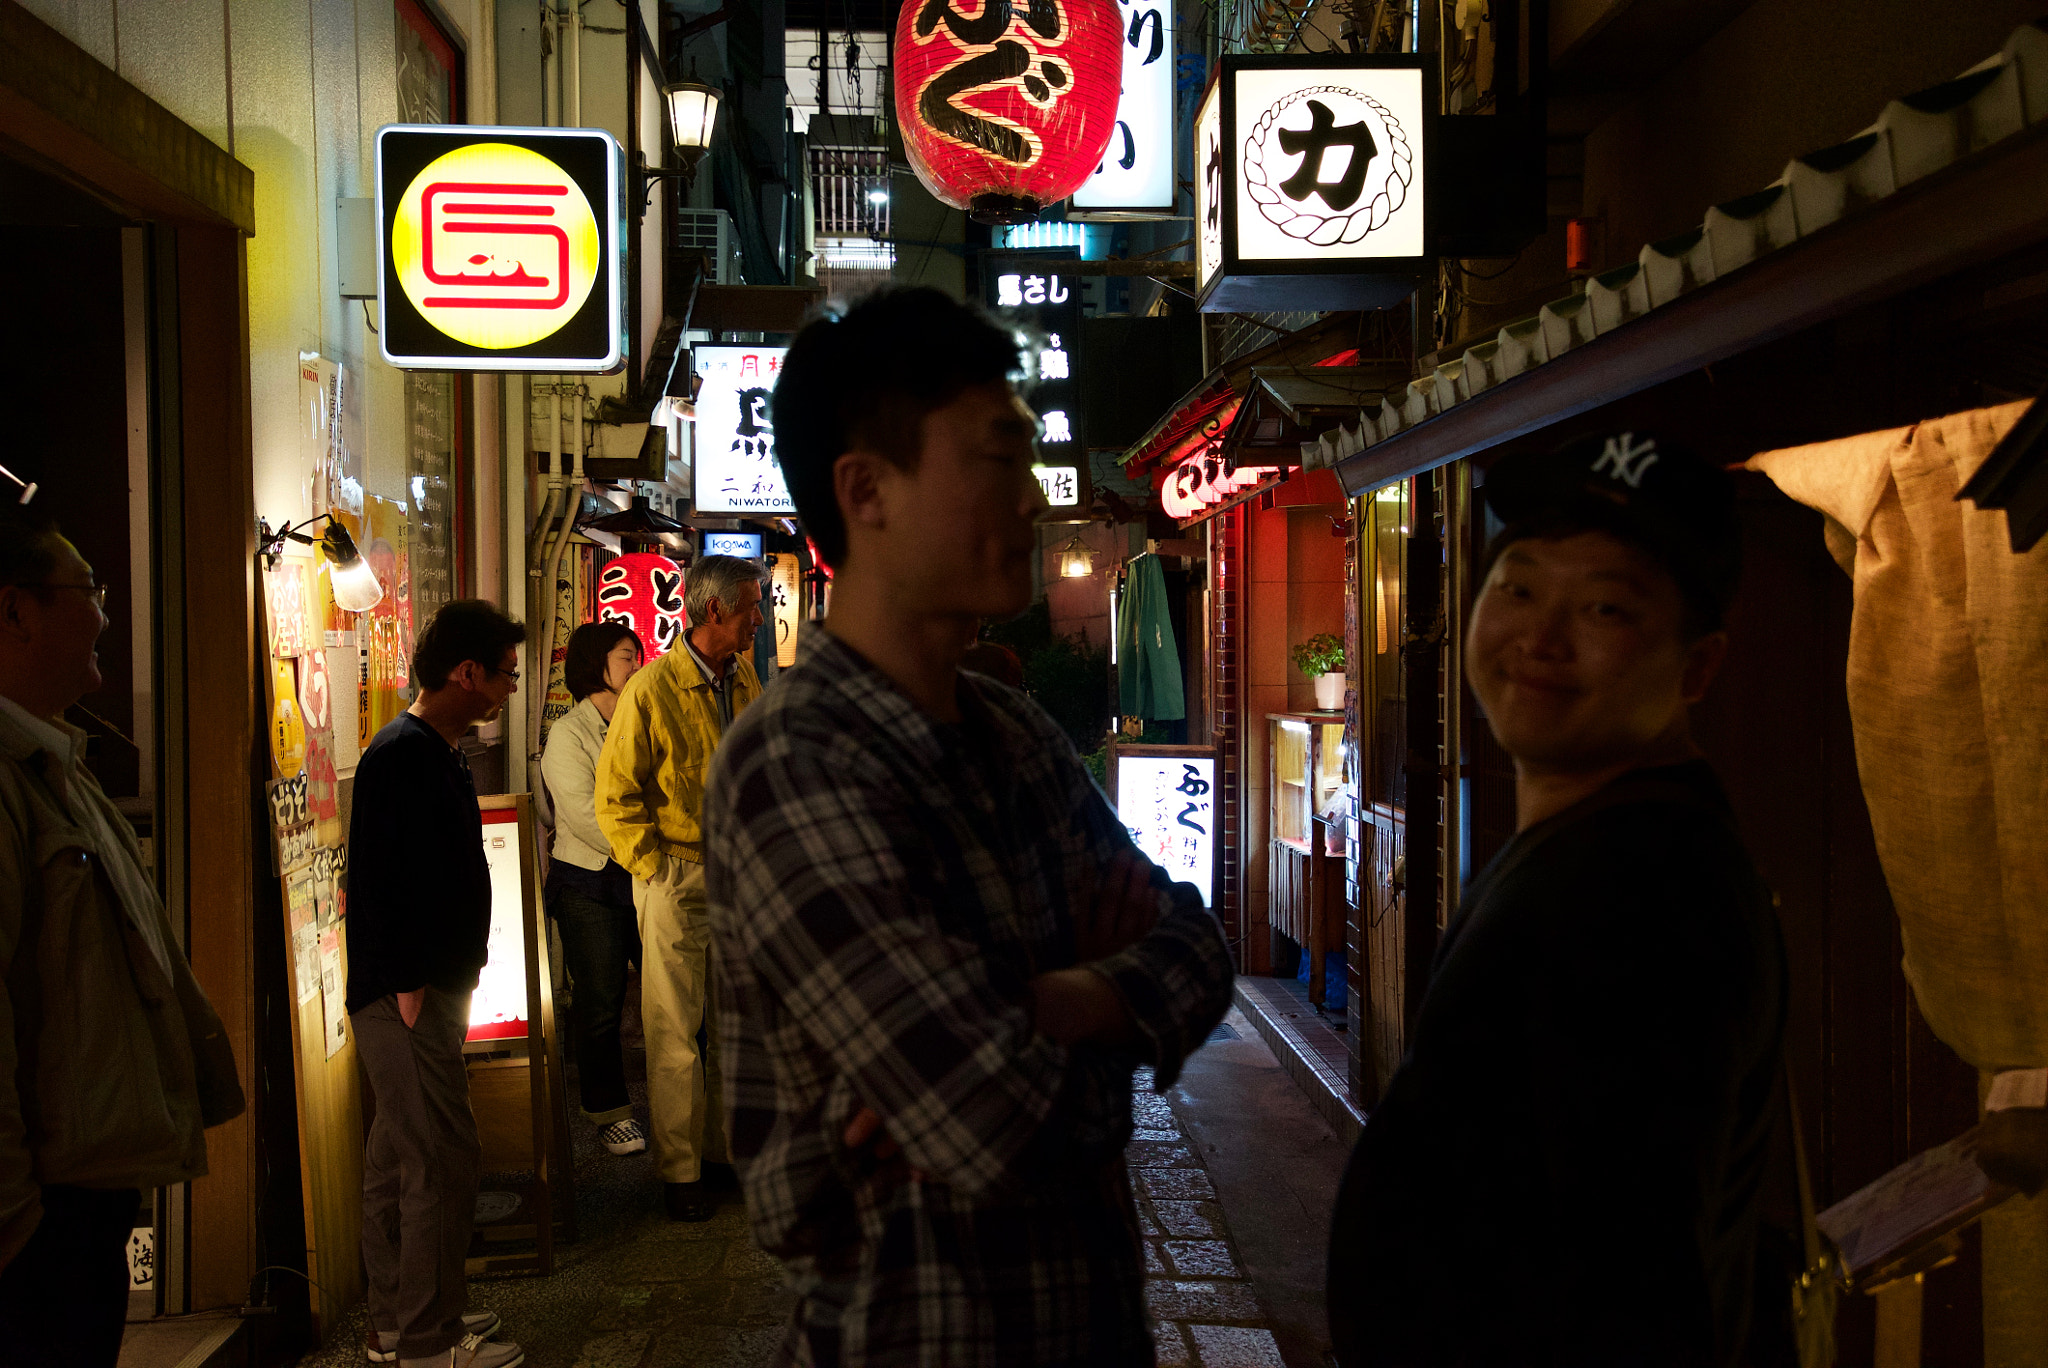 Sony a7S + Sony Vario-Tessar T* FE 16-35mm F4 ZA OSS sample photo. Osaka's alley at night photography